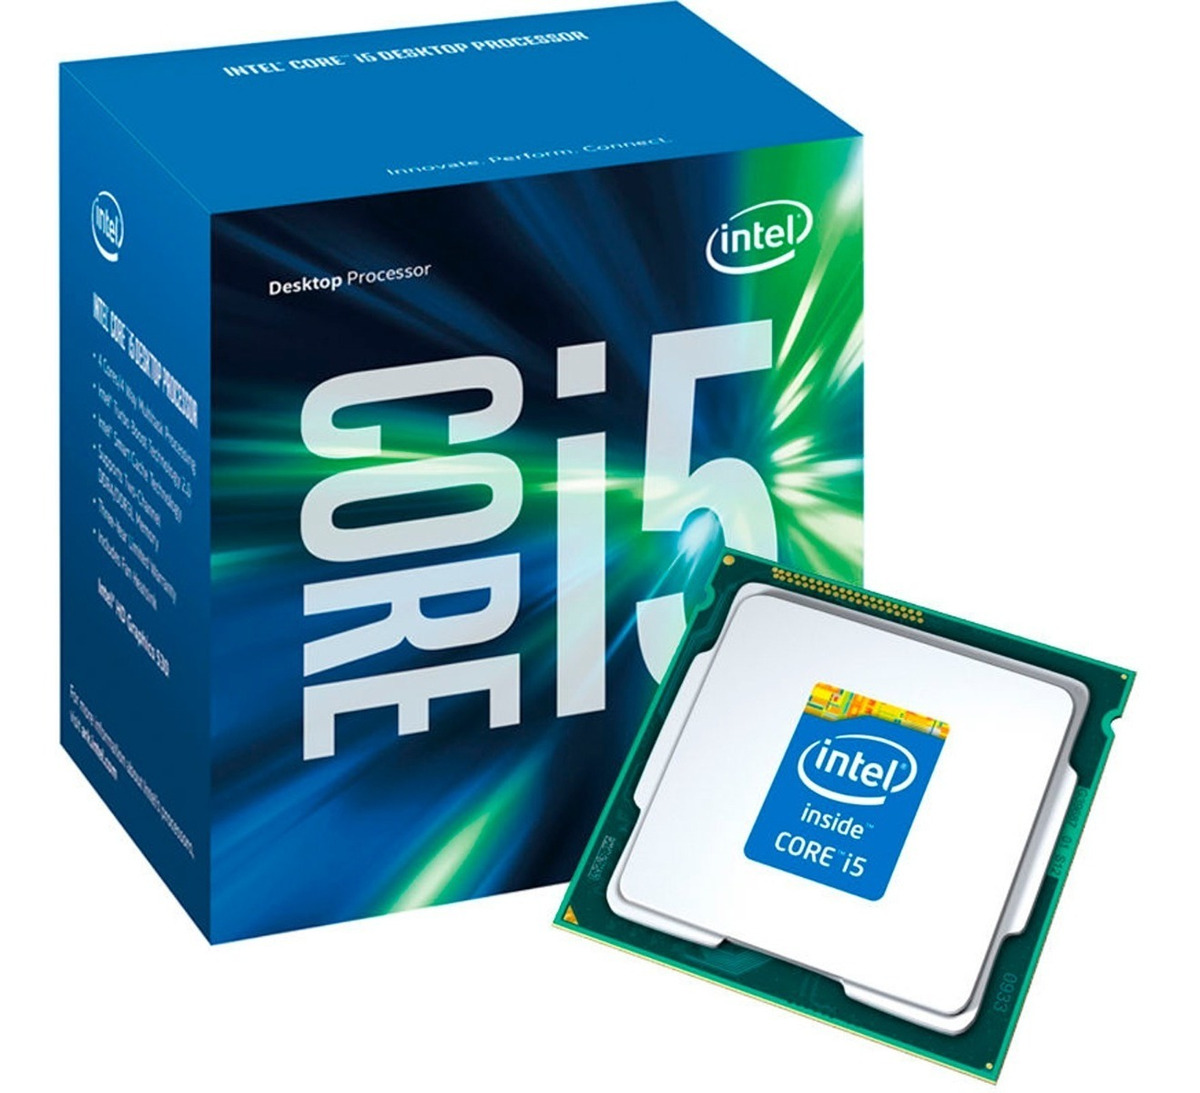 Интел без. Процессор Intel Core i5. Core i5-7400 lga1151. Процессор Интел коре i5. Процессор Интел кор ай 5.